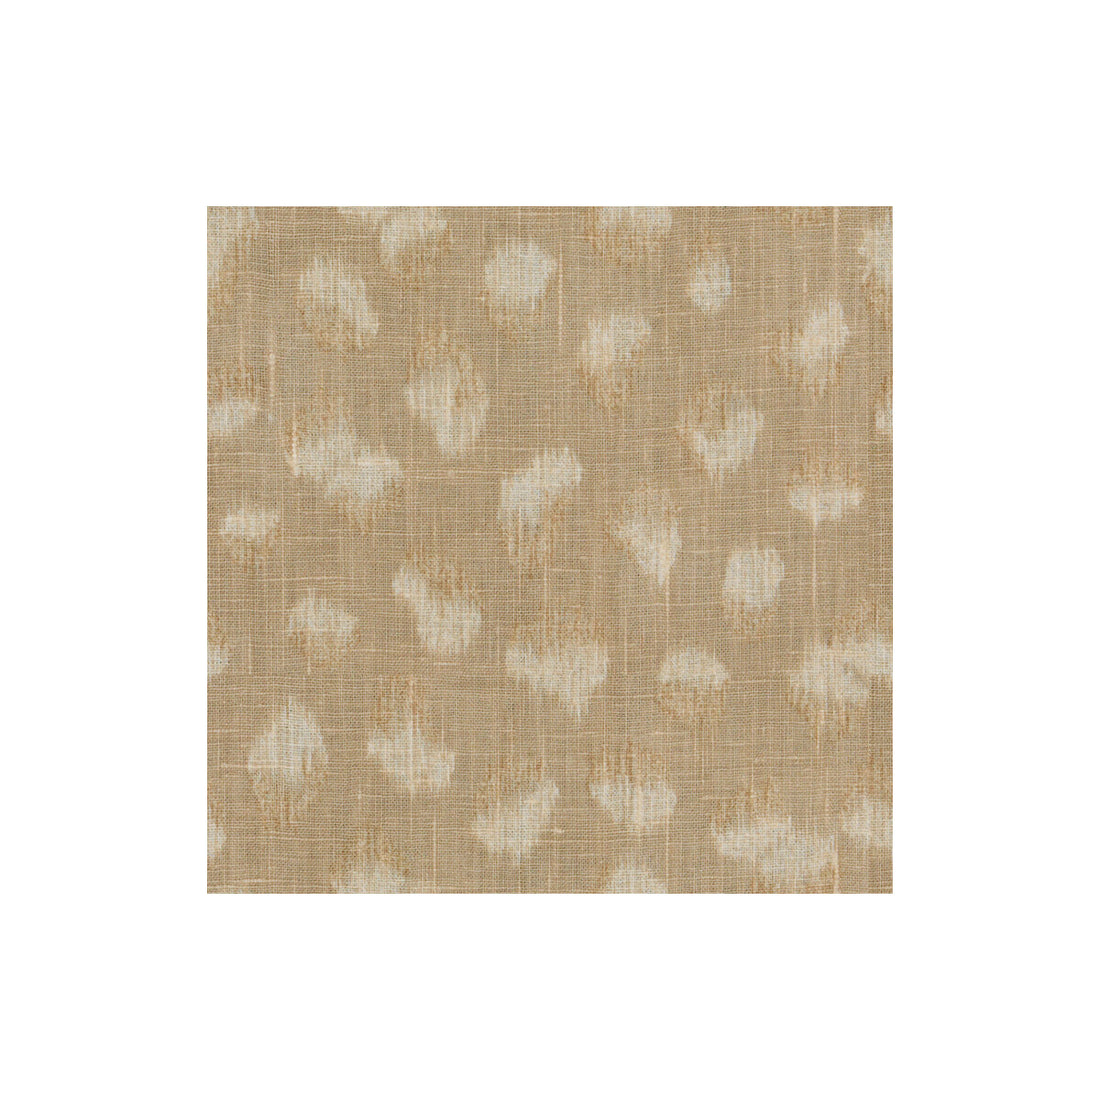 Feline fabric in beige/ivory color - pattern GWF-3106.116.0 - by Lee Jofa Modern in the Kelly Wearstler II collection